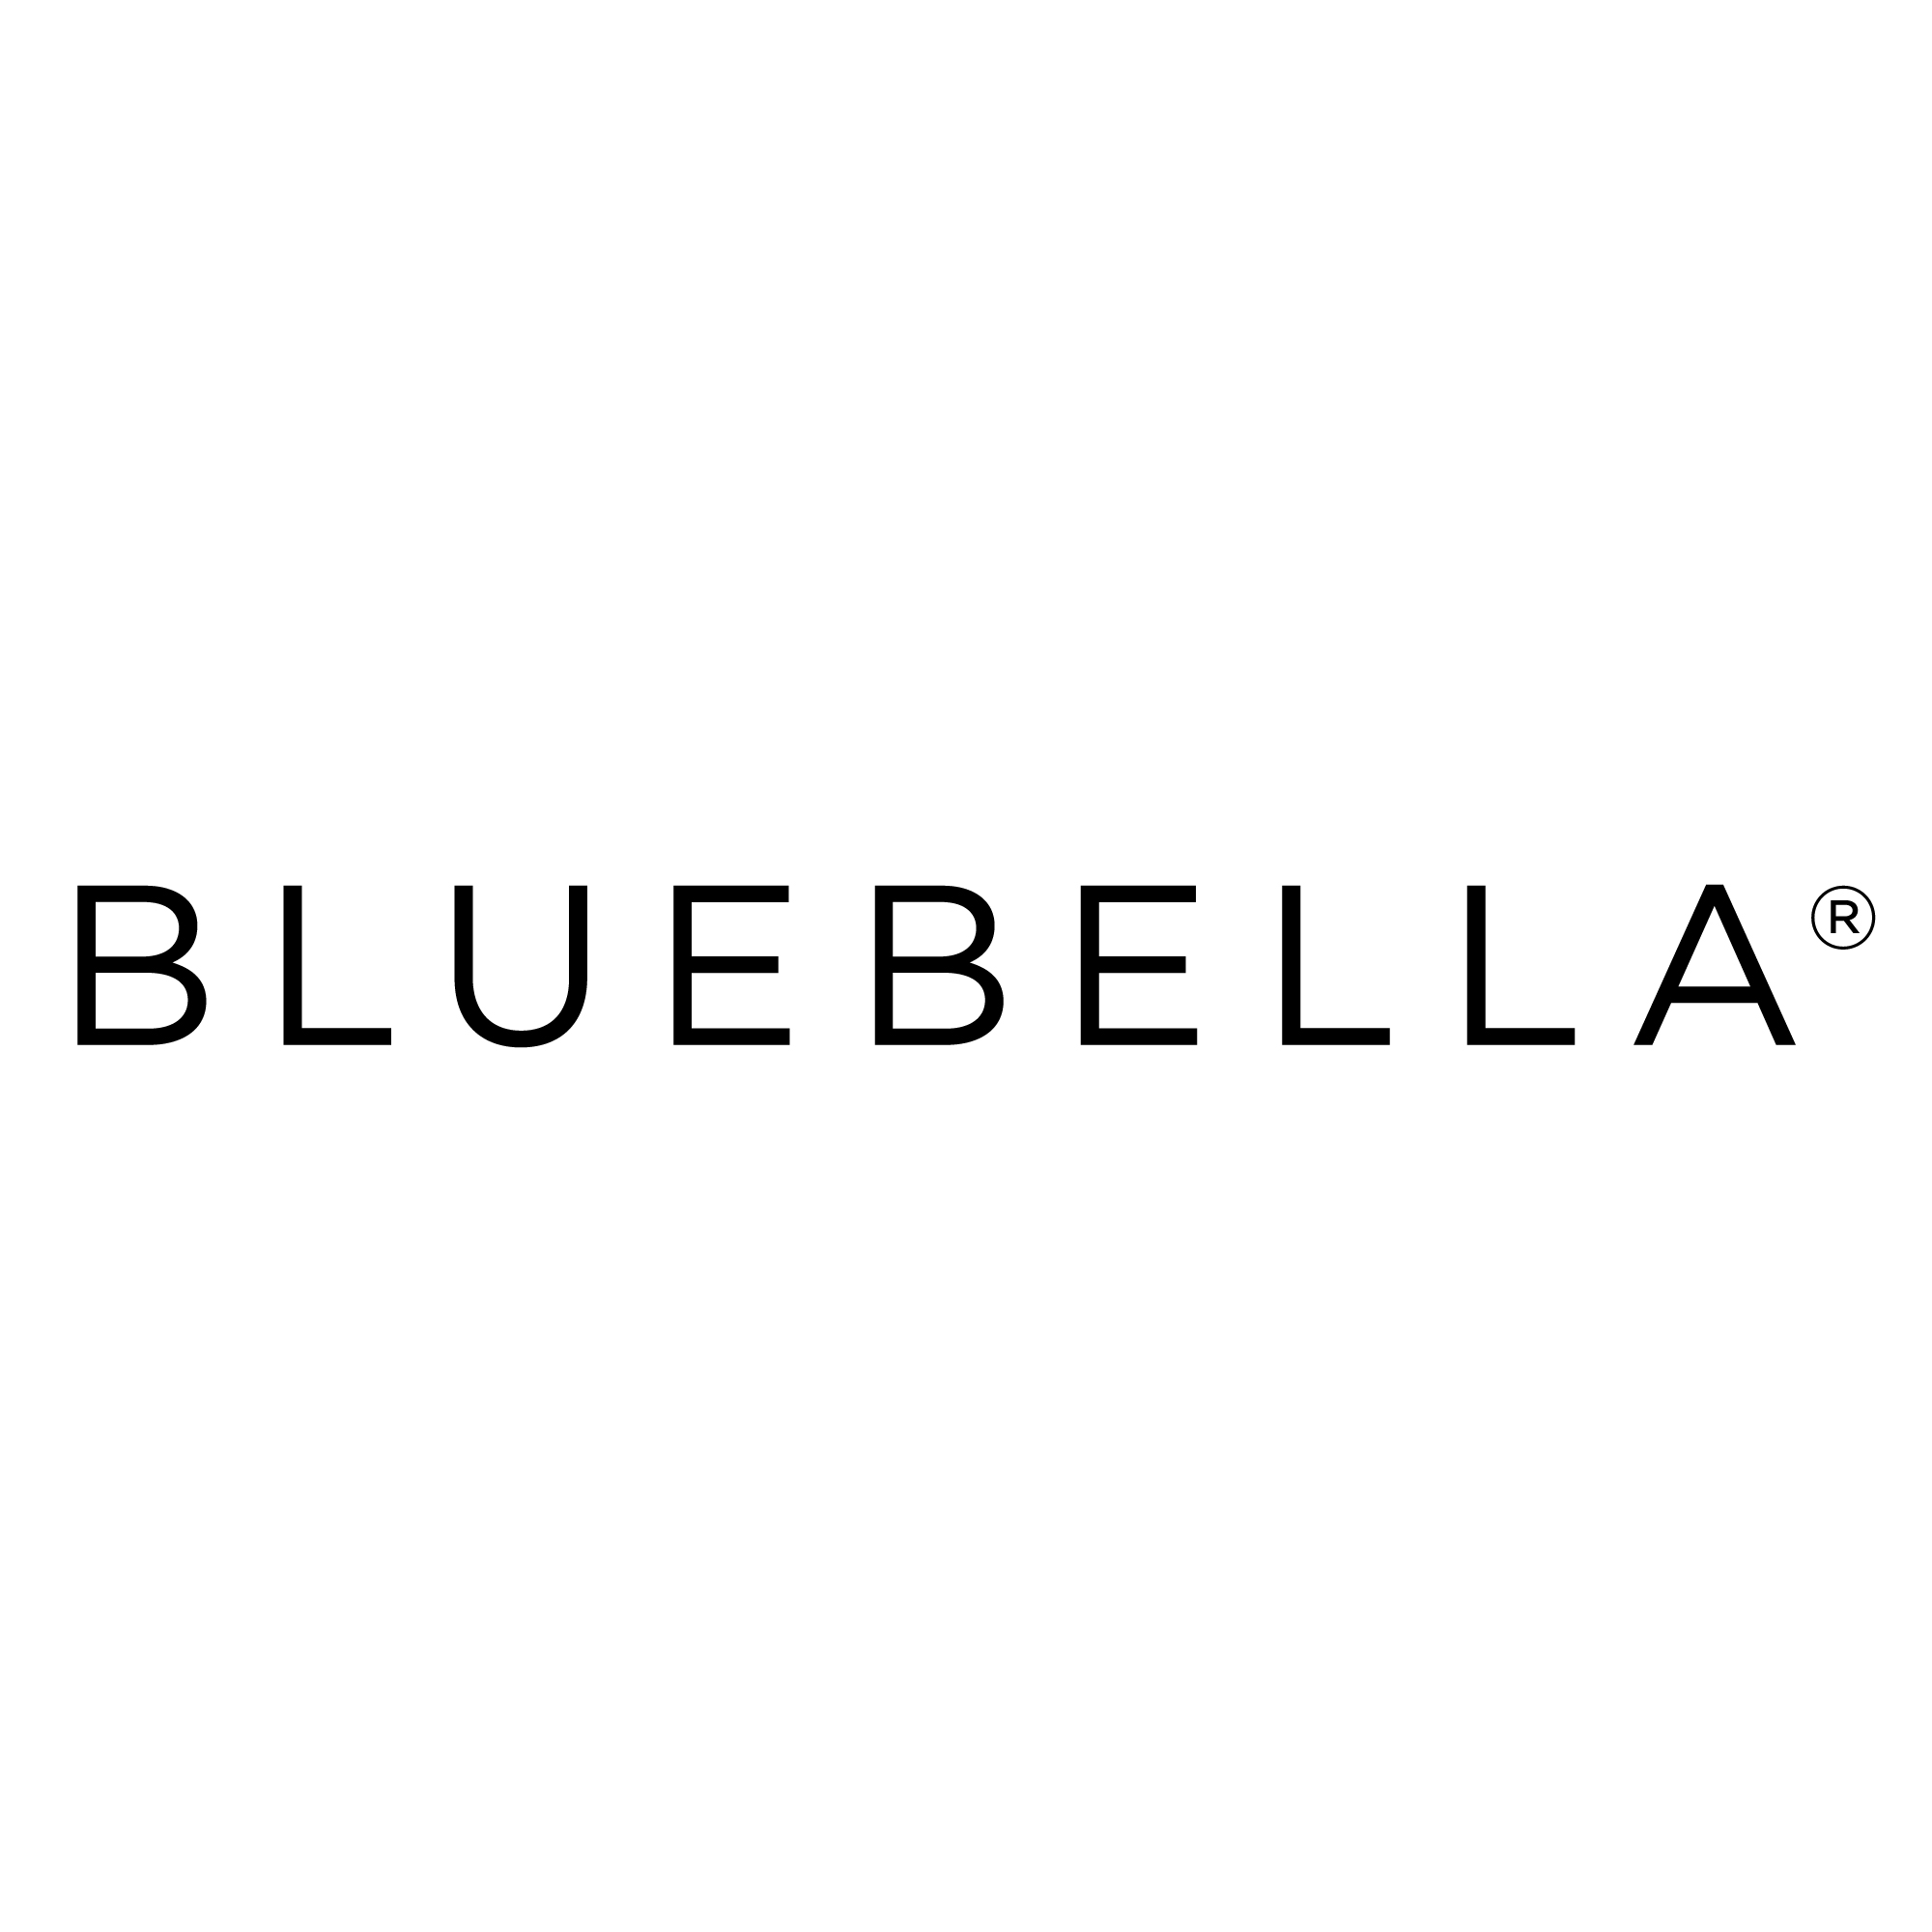 100% WORKING Bluebella Discount Code Australia ([month] [year]) 6